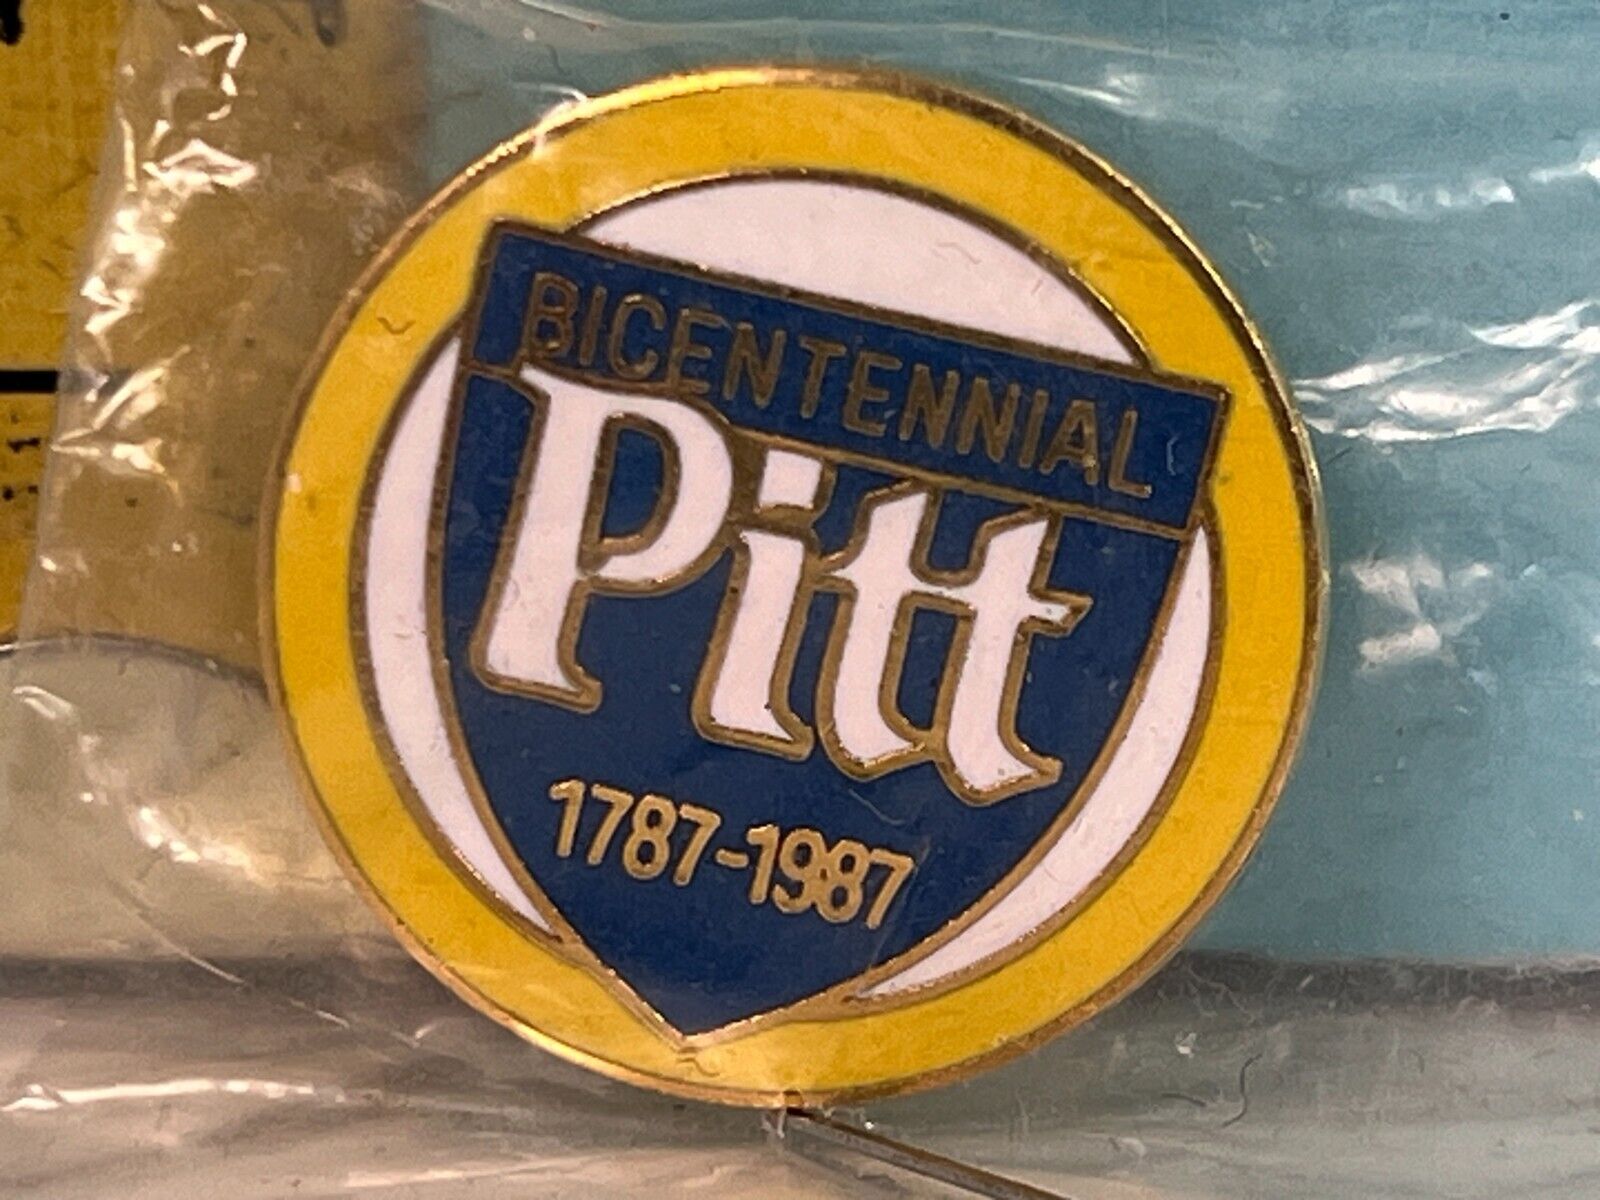 Vintage Pitt 1787 -1987 Bicentennial Pinback Button.